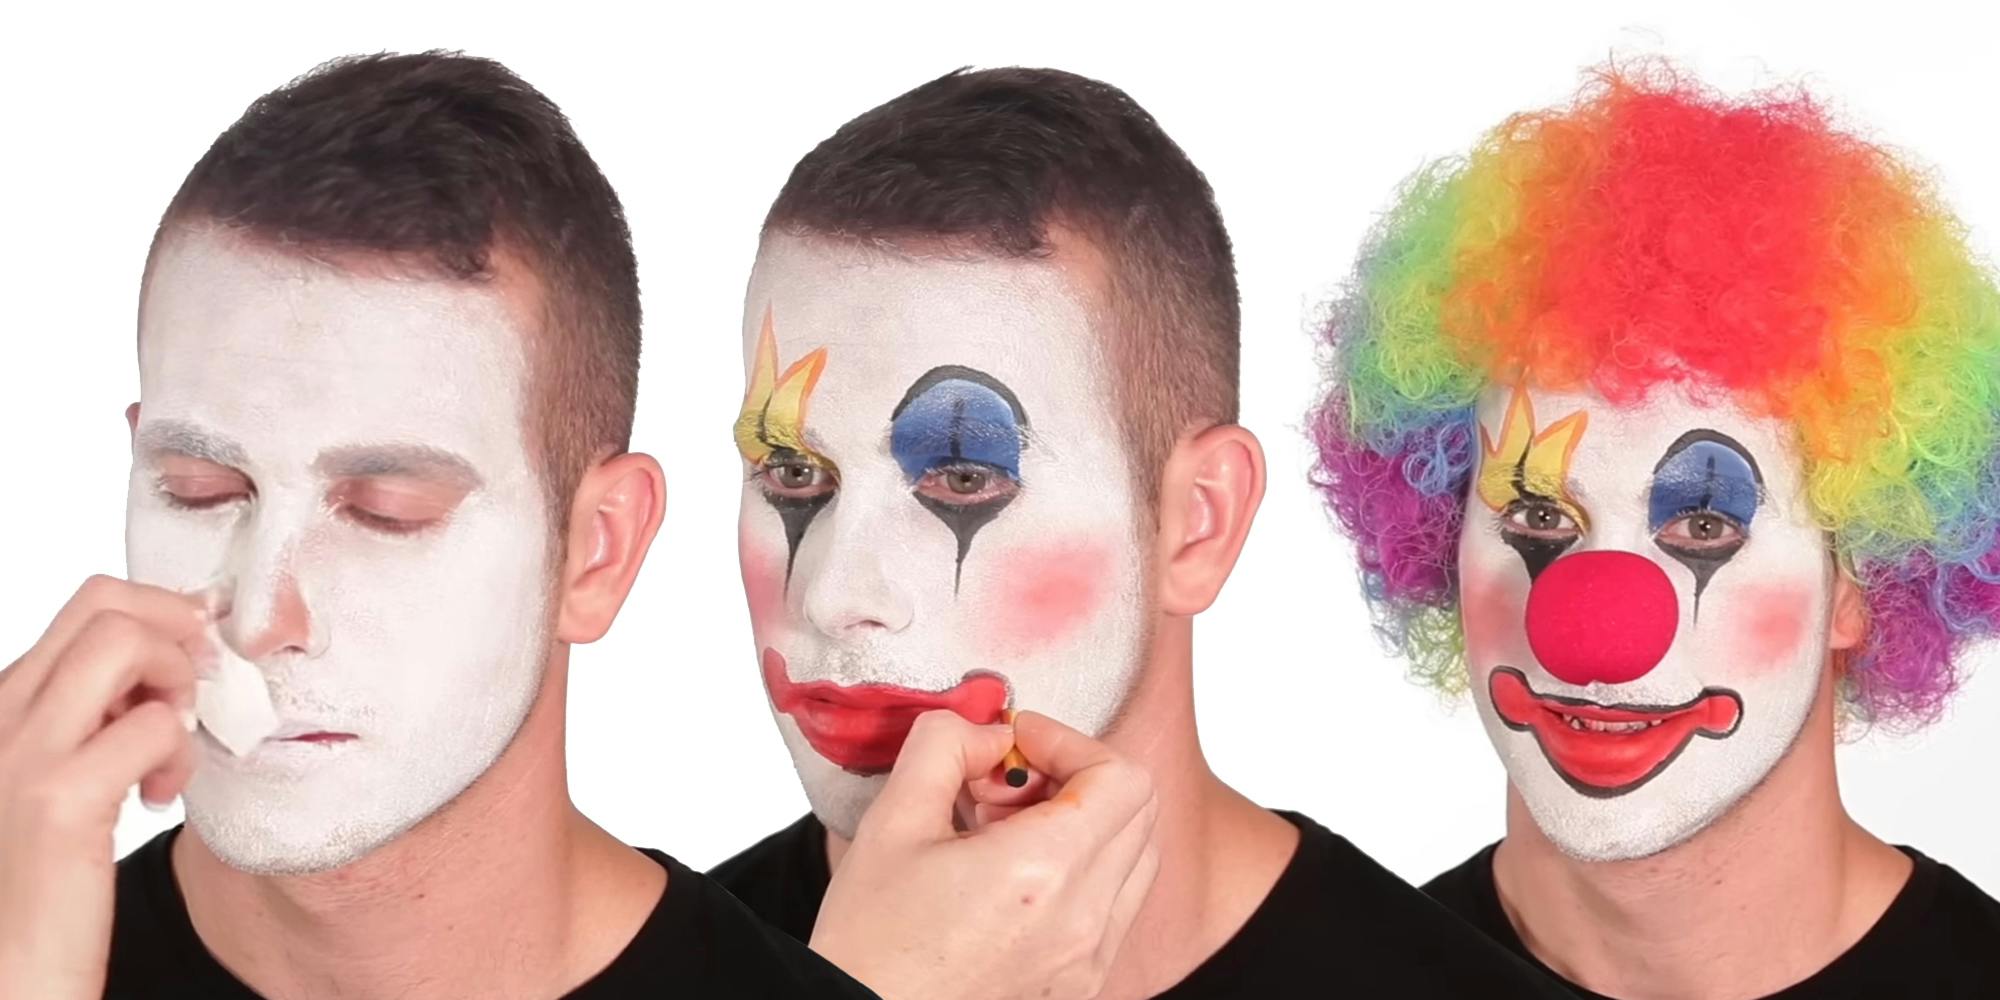 putting on clown makeup